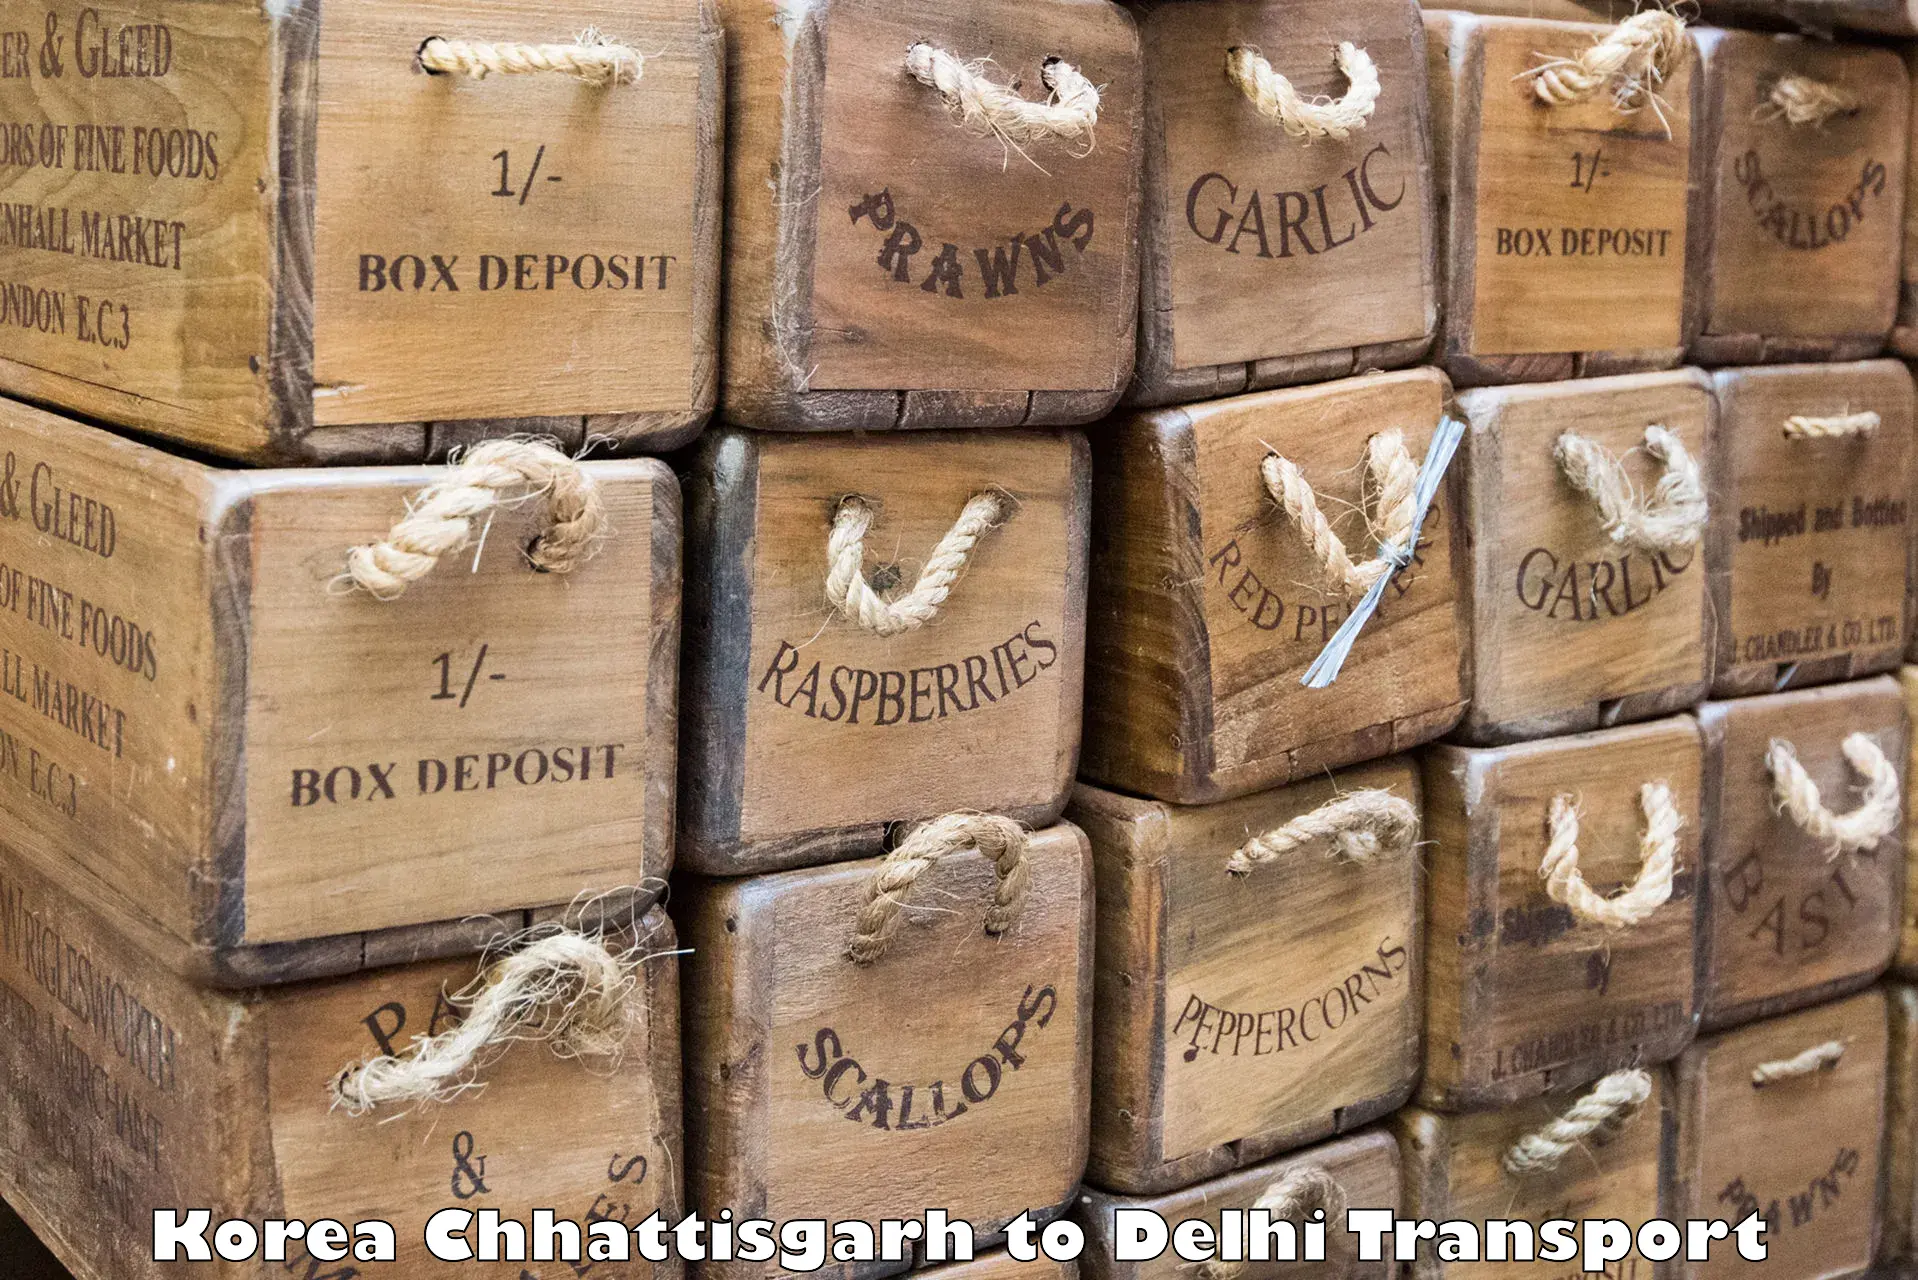 Air freight transport services Korea Chhattisgarh to Jamia Millia Islamia New Delhi